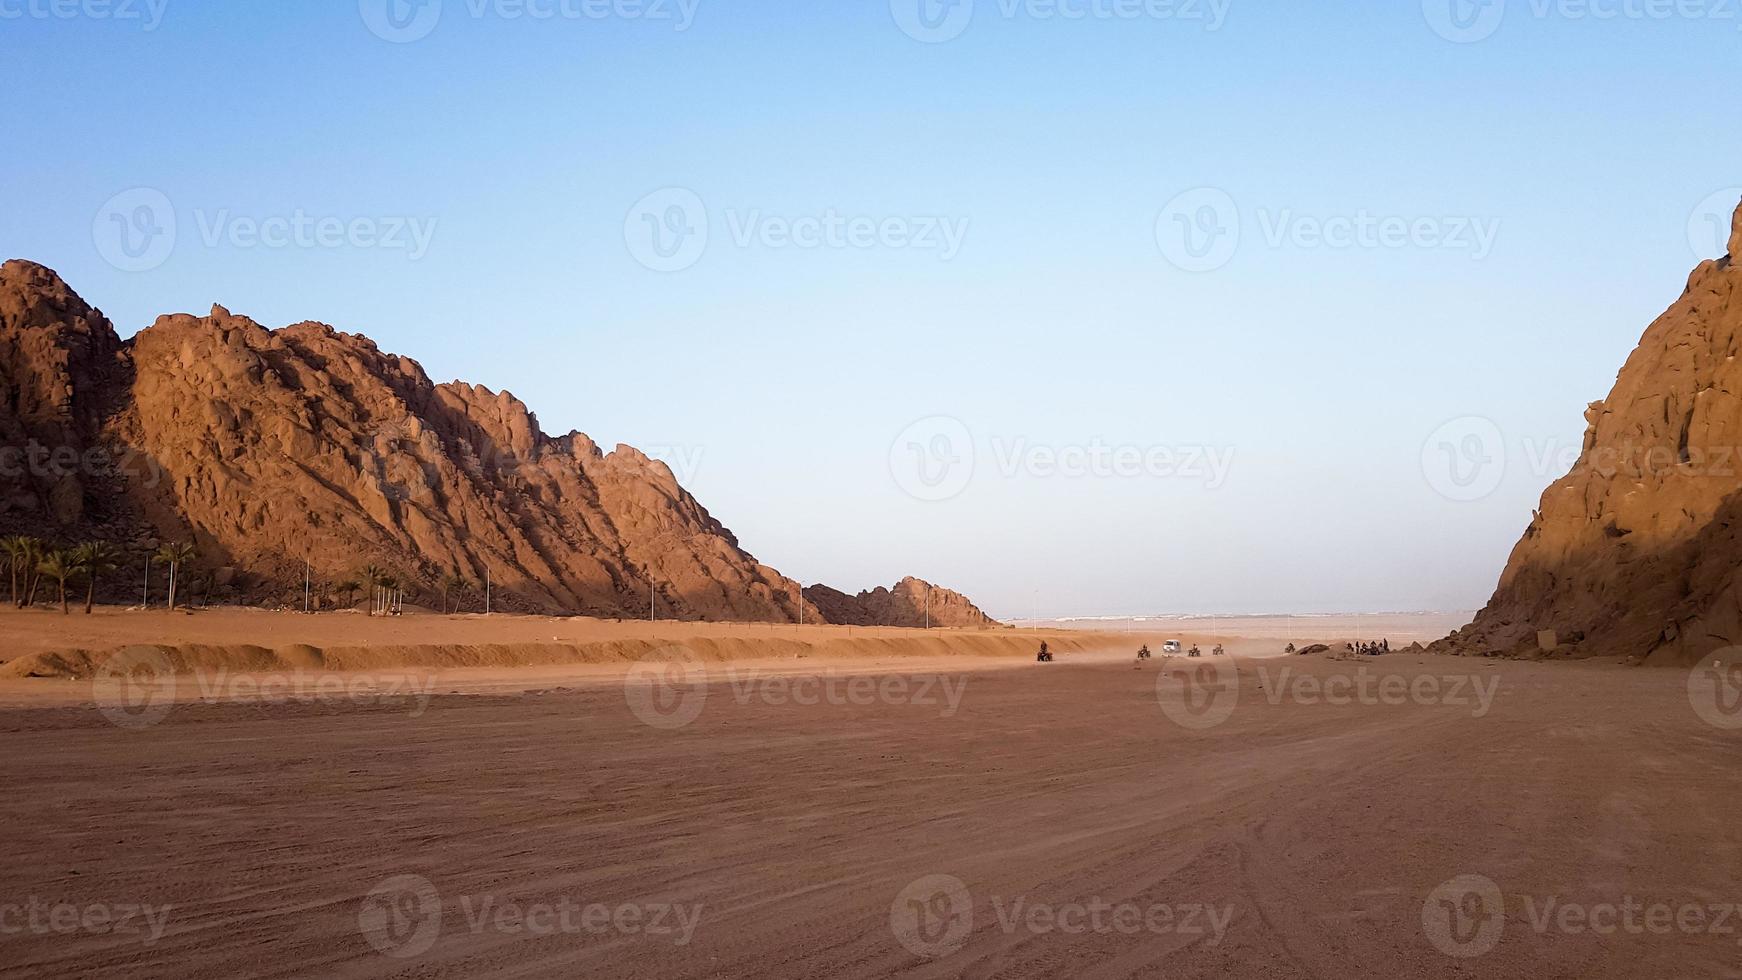 deserto no Egito. colinas rochosas de areia. um turista solitário em um atv no deserto no contexto do céu azul e montanhas está caminhando em direção ao mar vermelho. paisagem no deserto. foto